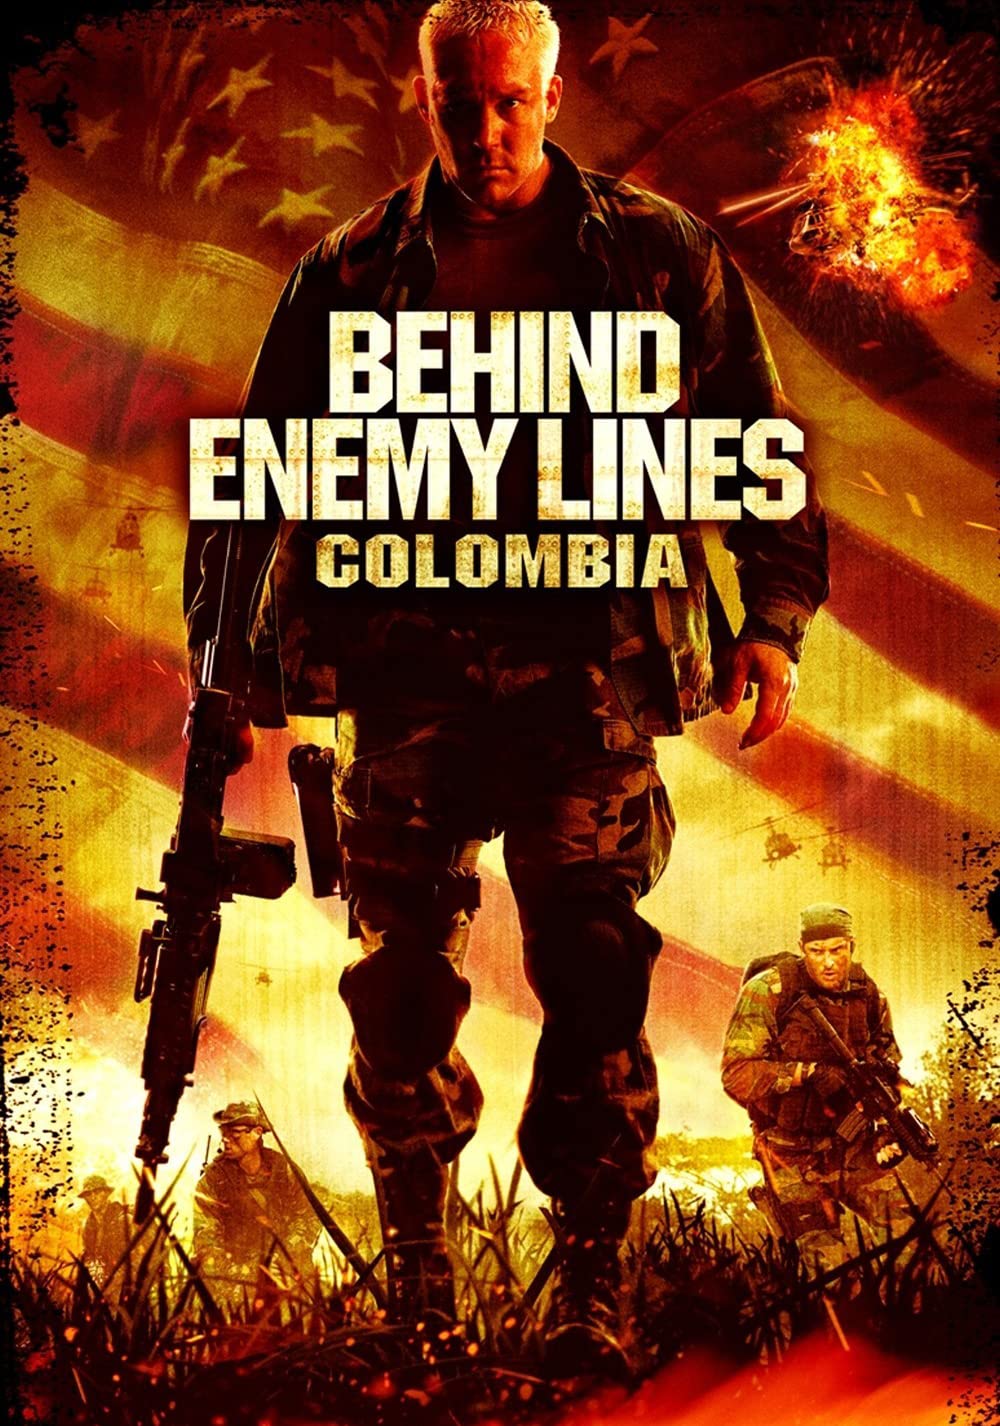 Behind Enemy Lines: Colombia (2009) ถล่มยุทธการโคลอมเบีย 